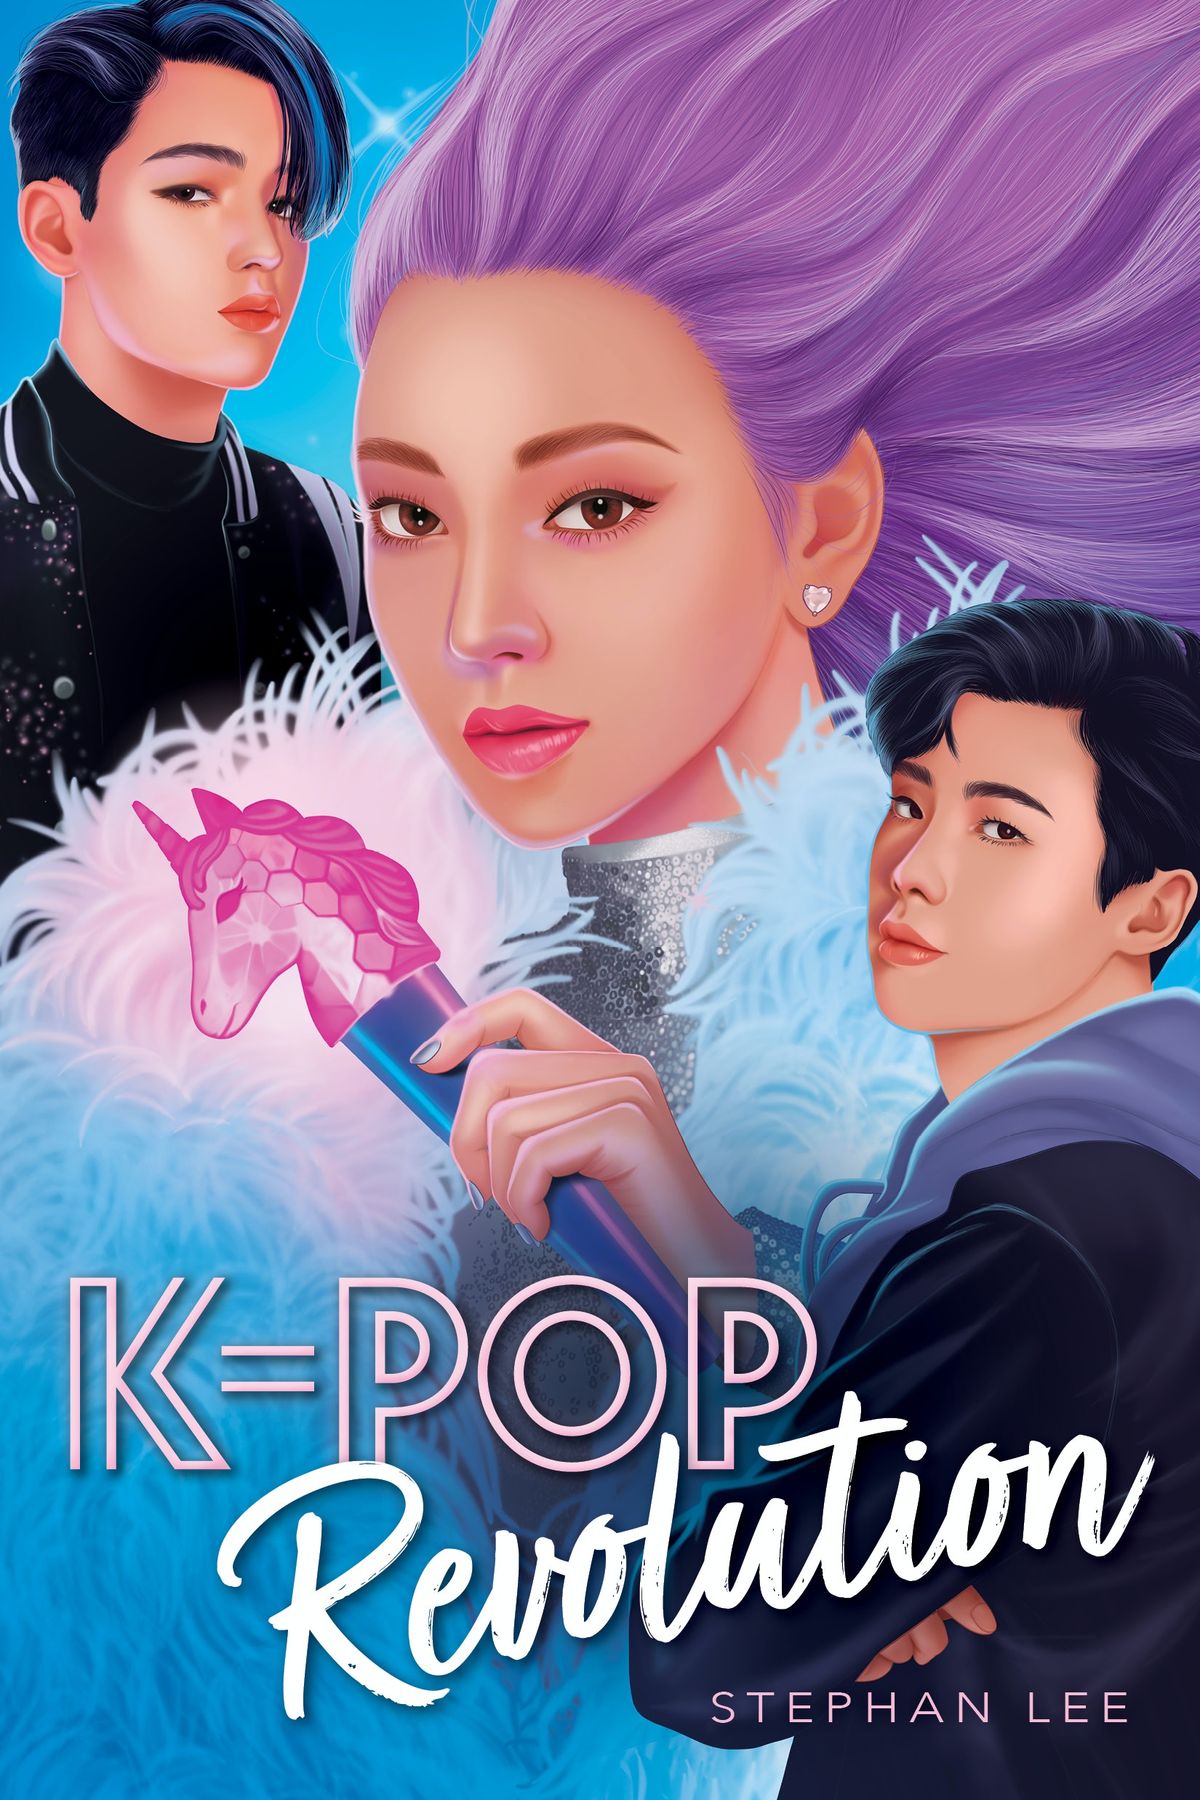 Få en første titt på Stephan Lees K-Pop Confidential Sequel, K-Pop Revolution